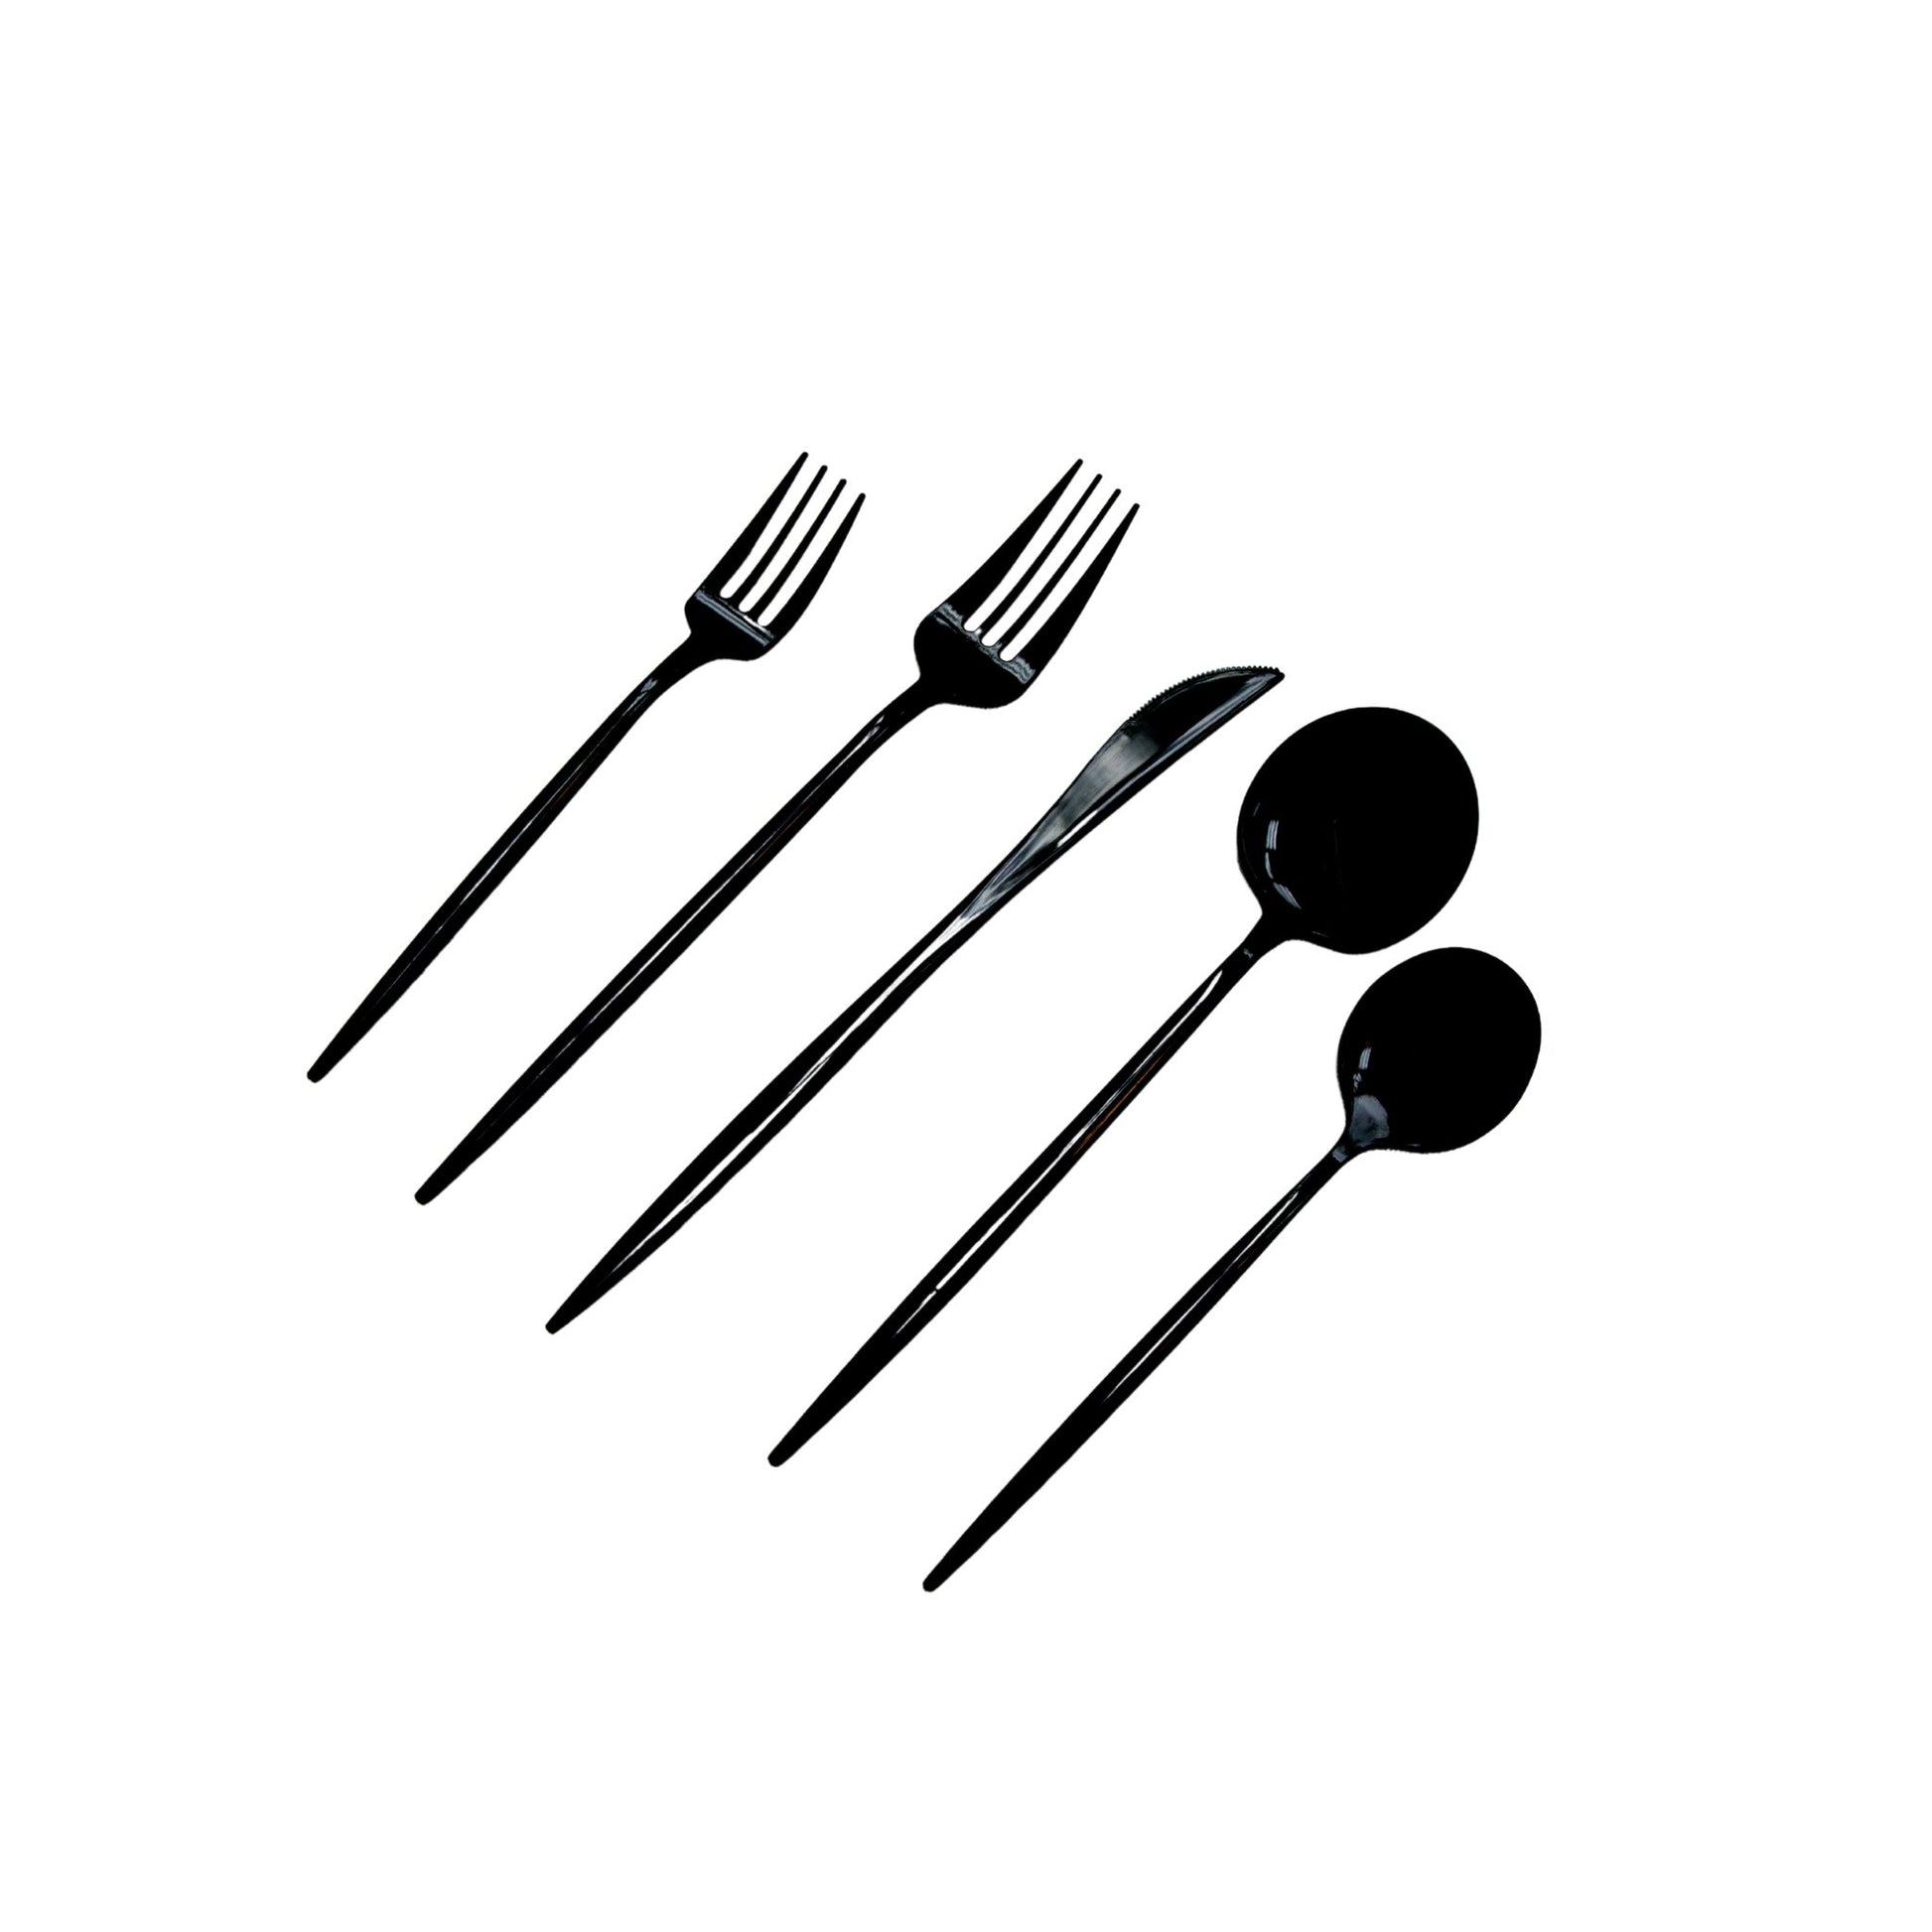 Black Plastic Cutlery Set 100 pcs/pk - Mod Collection